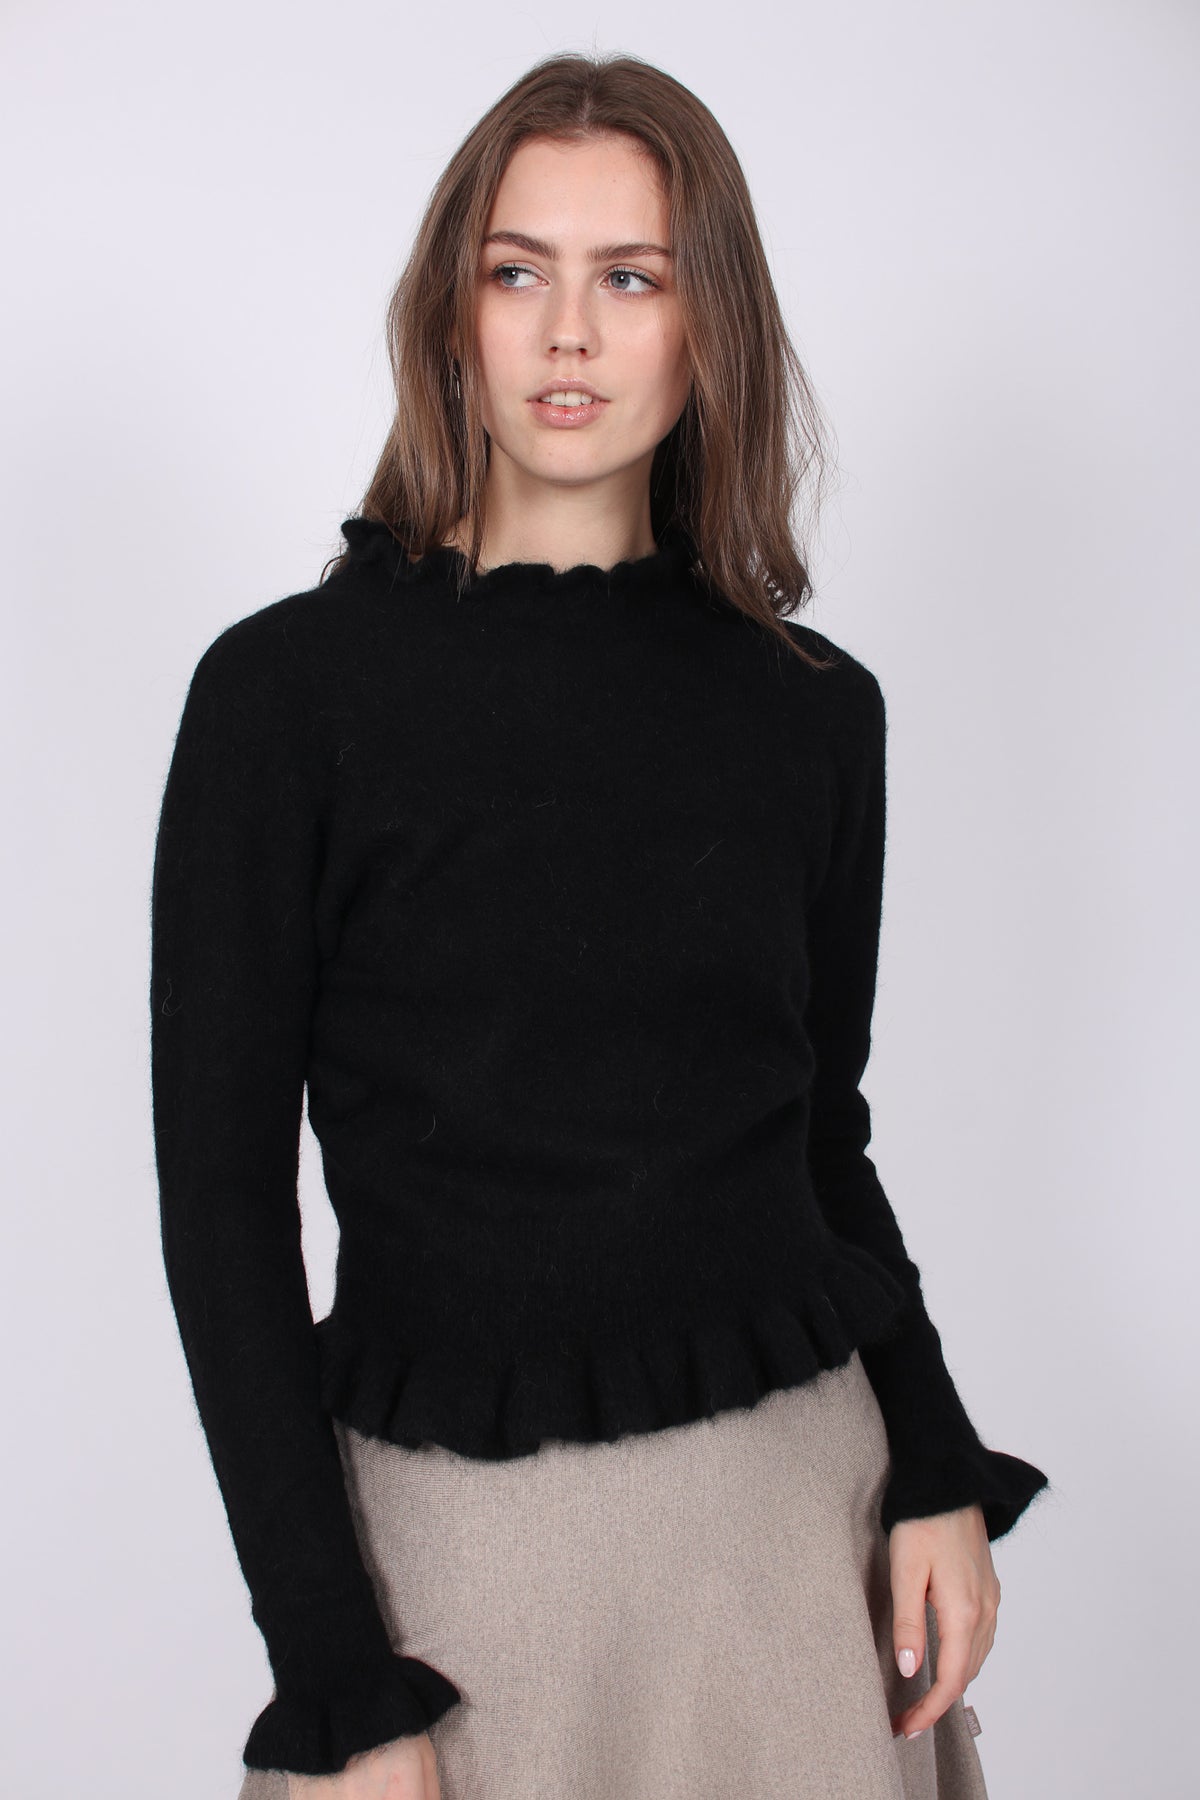 Valeria Alpaca Sweater - Black - Ella & il - Gensere - VILLOID.no